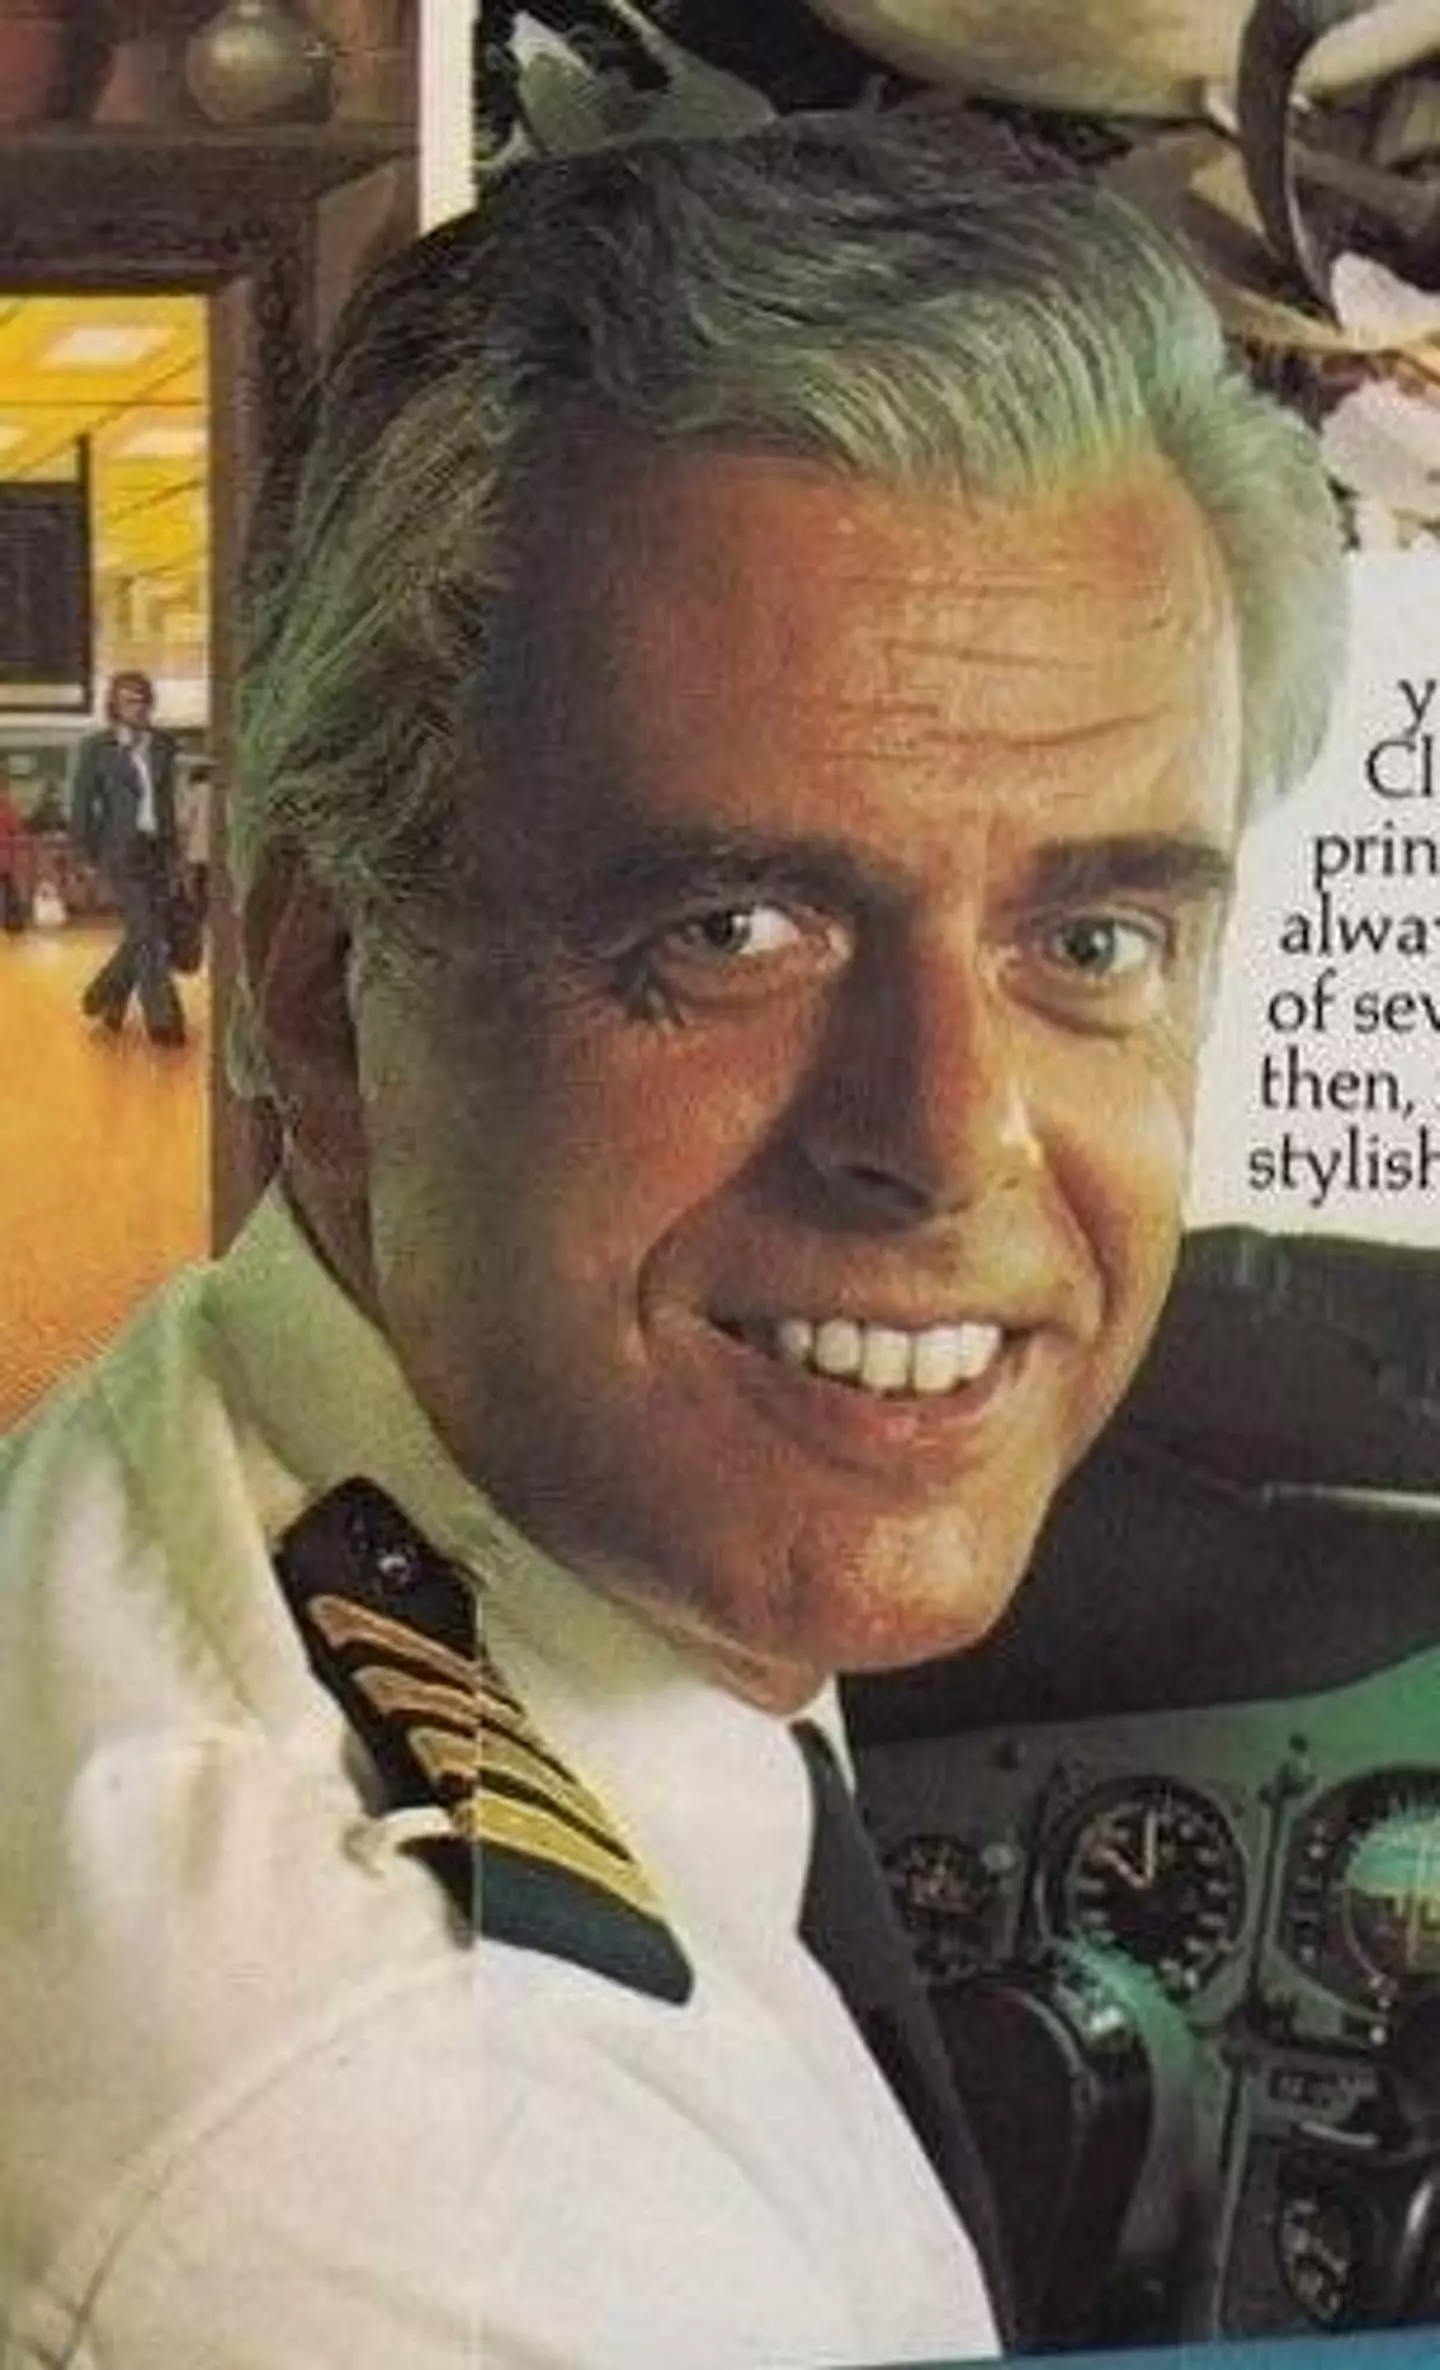 KLM pilot Jacob Louis Veldhuyzen van Zanten was featured in numerous advertisements.